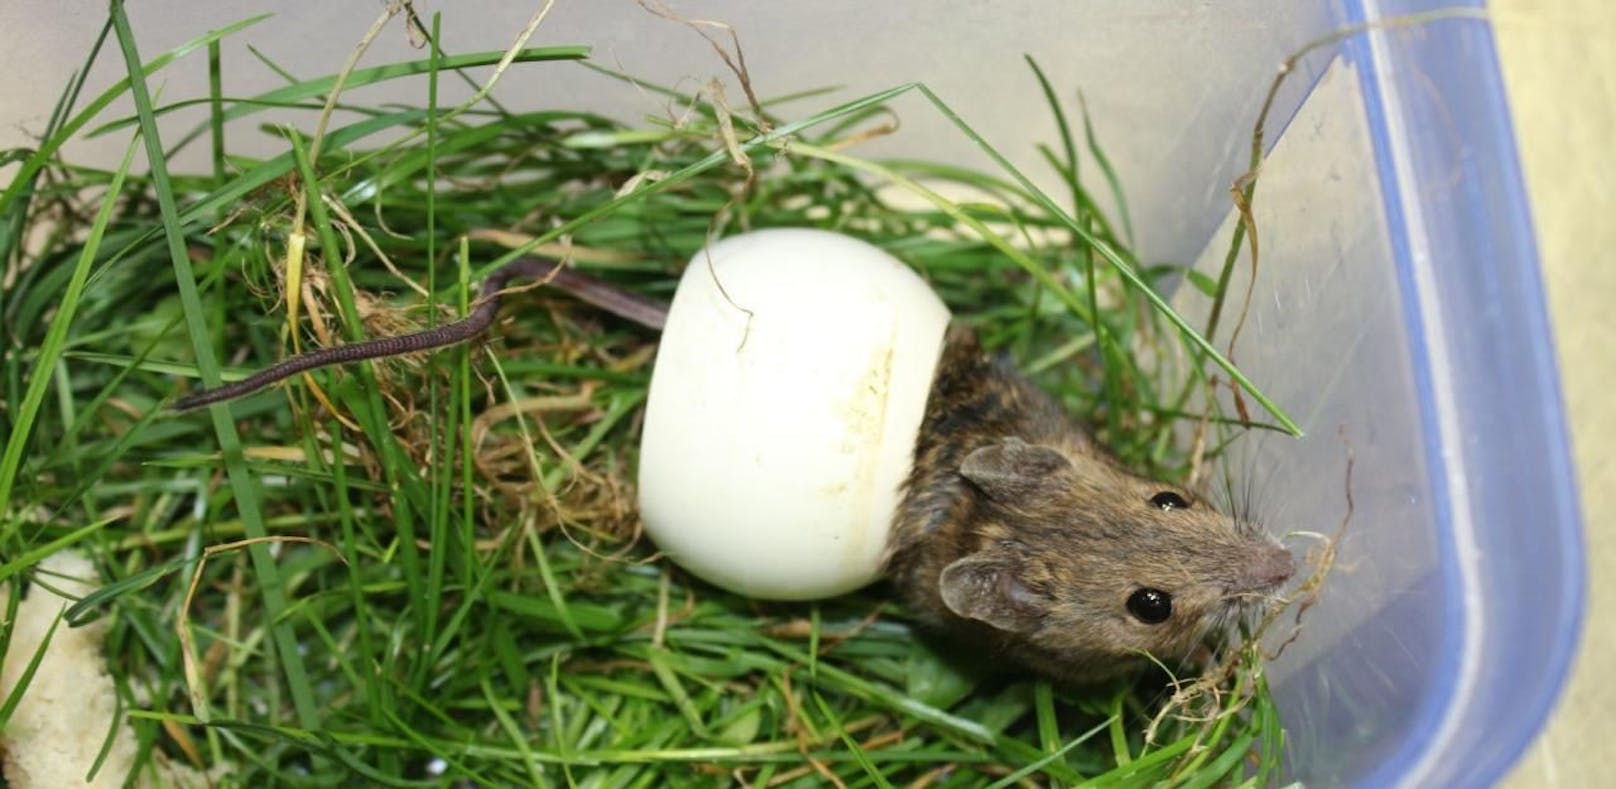 Die Maus hatte sich in der Düse eines Pools eingeklemmt. Der kleine Nager konnte im Wiener Tierschutzverein unversehrt befreit werden.